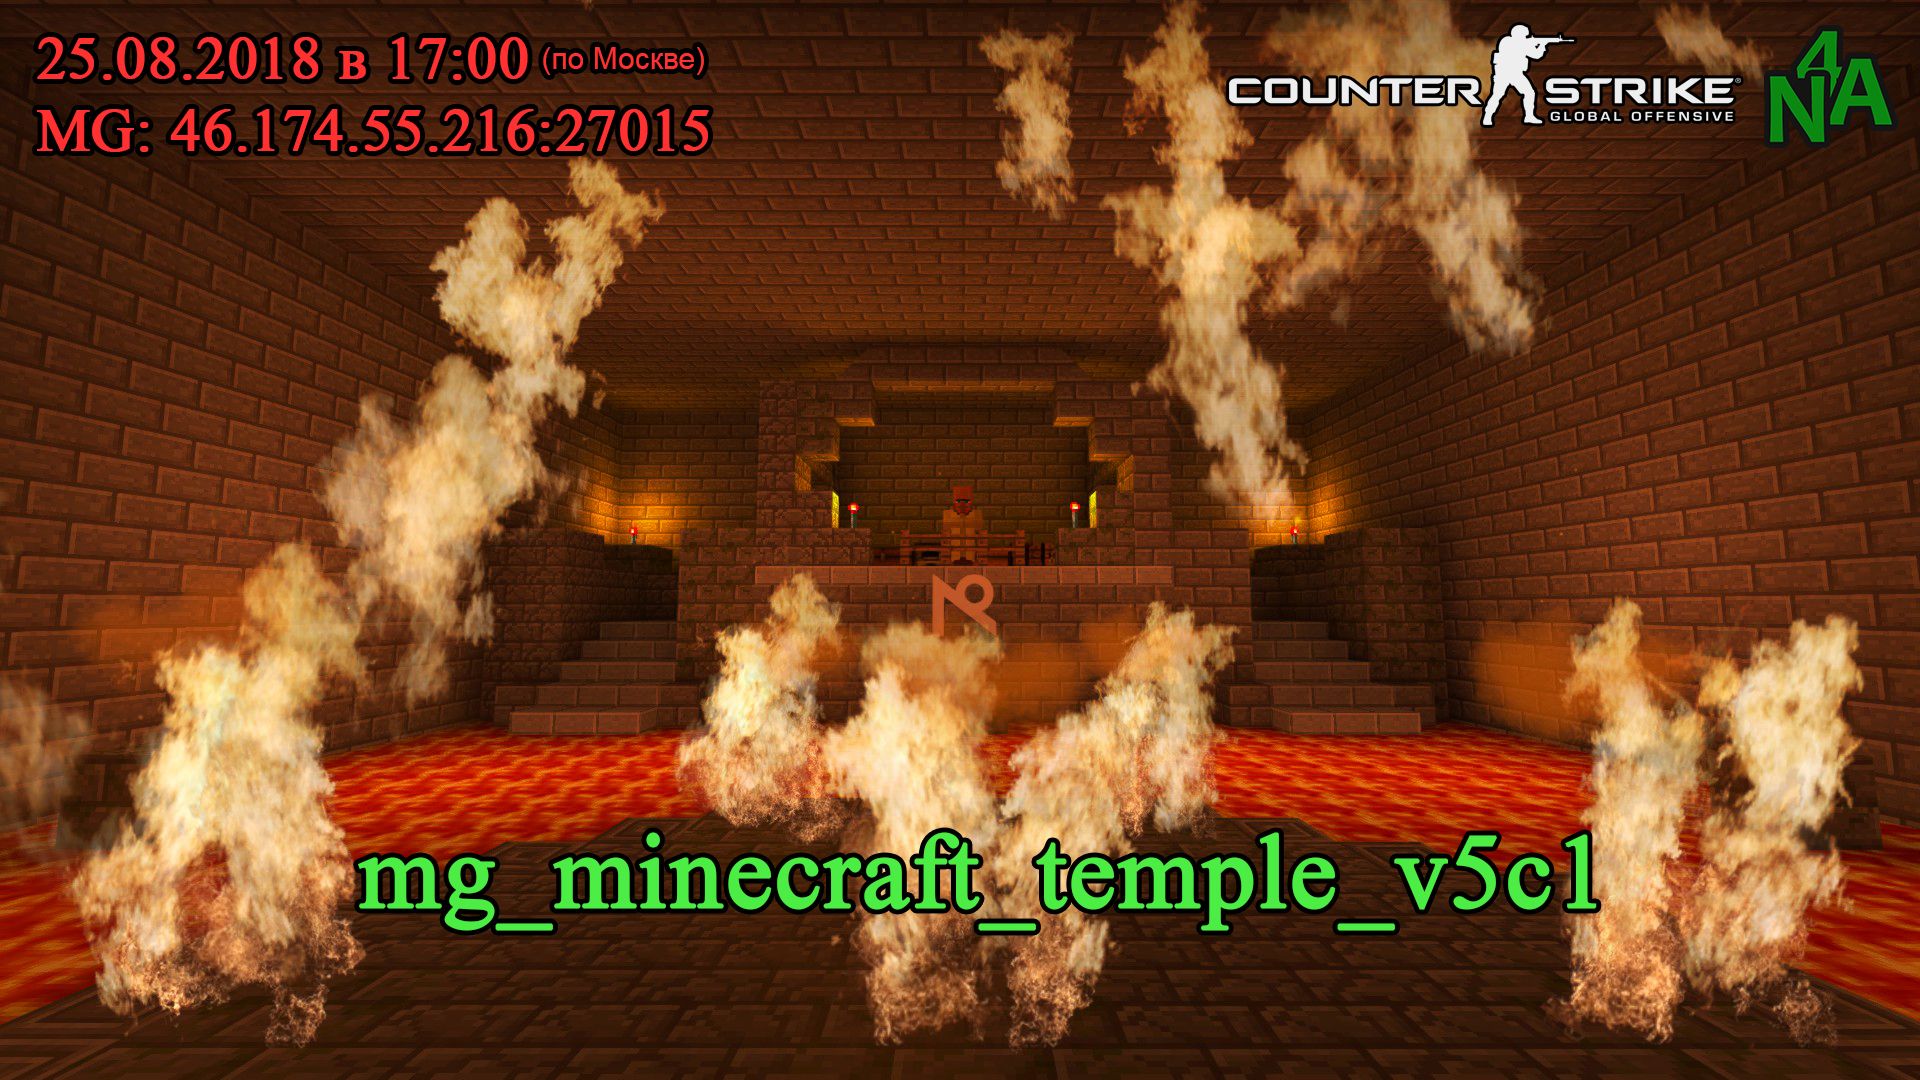 mg_minecraft_temple_v5c1.jpg